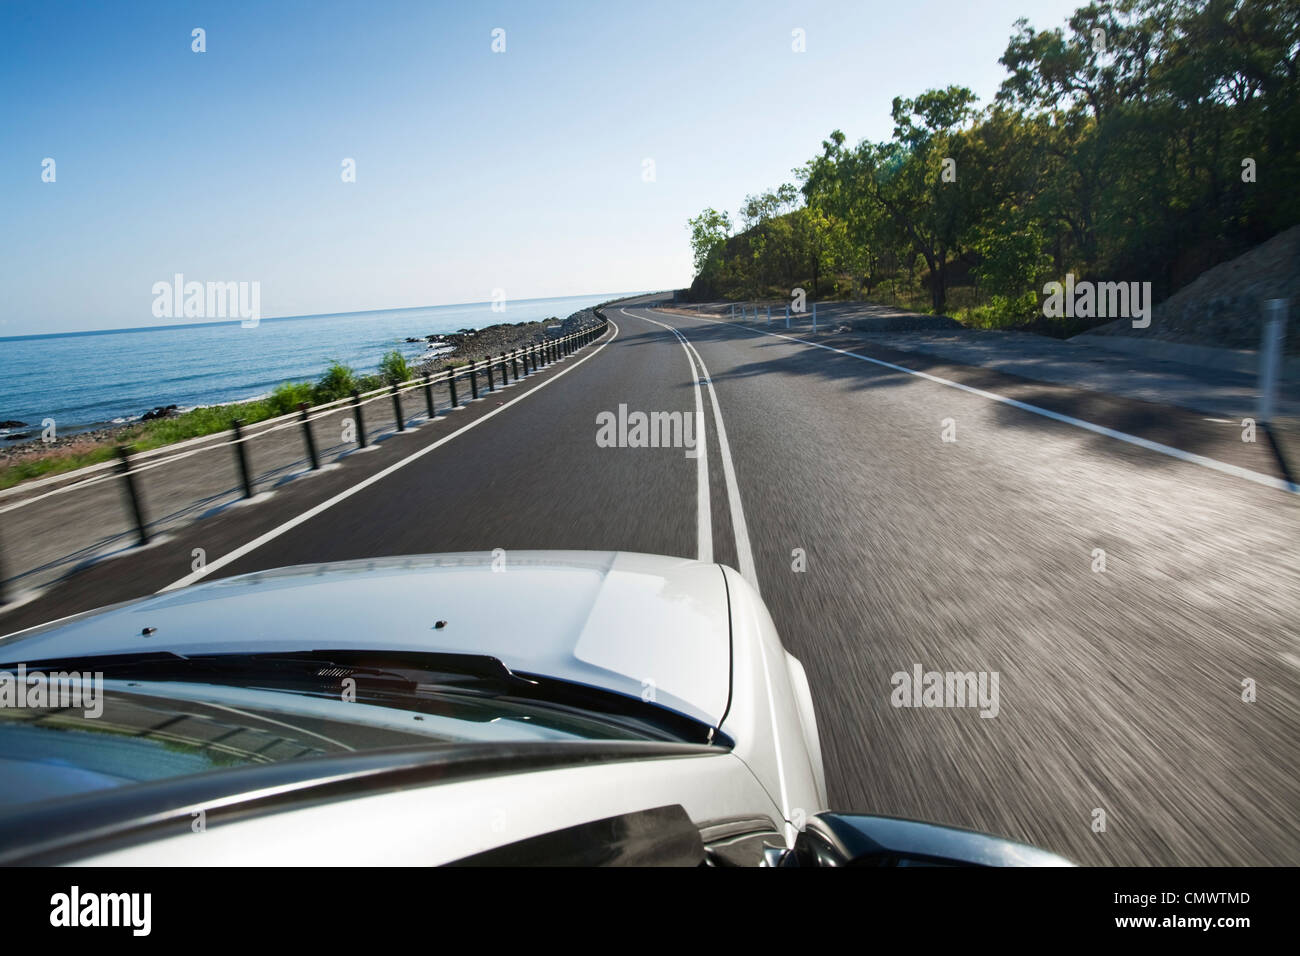 Driving along scenic coastline. Captain Cook Highway, Cairns, Queensland, Australia Stock Photo